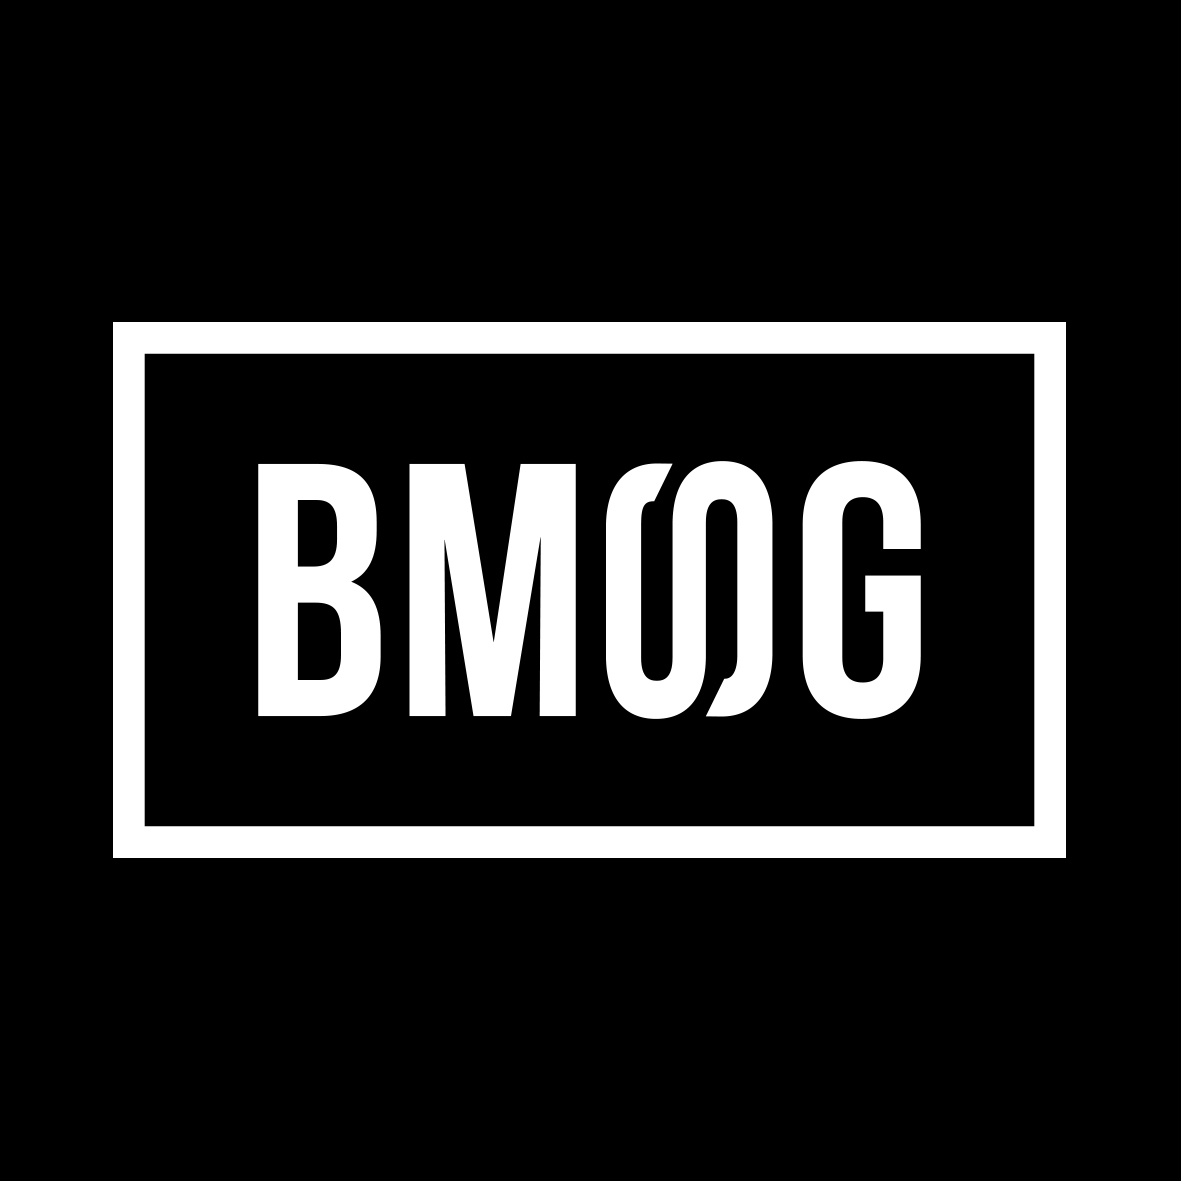 SKY-HIがマネジメントとレーベル運営の新会社 BMSG設立を発表、スローガンは「才能を殺さない為に。」 | Musicman